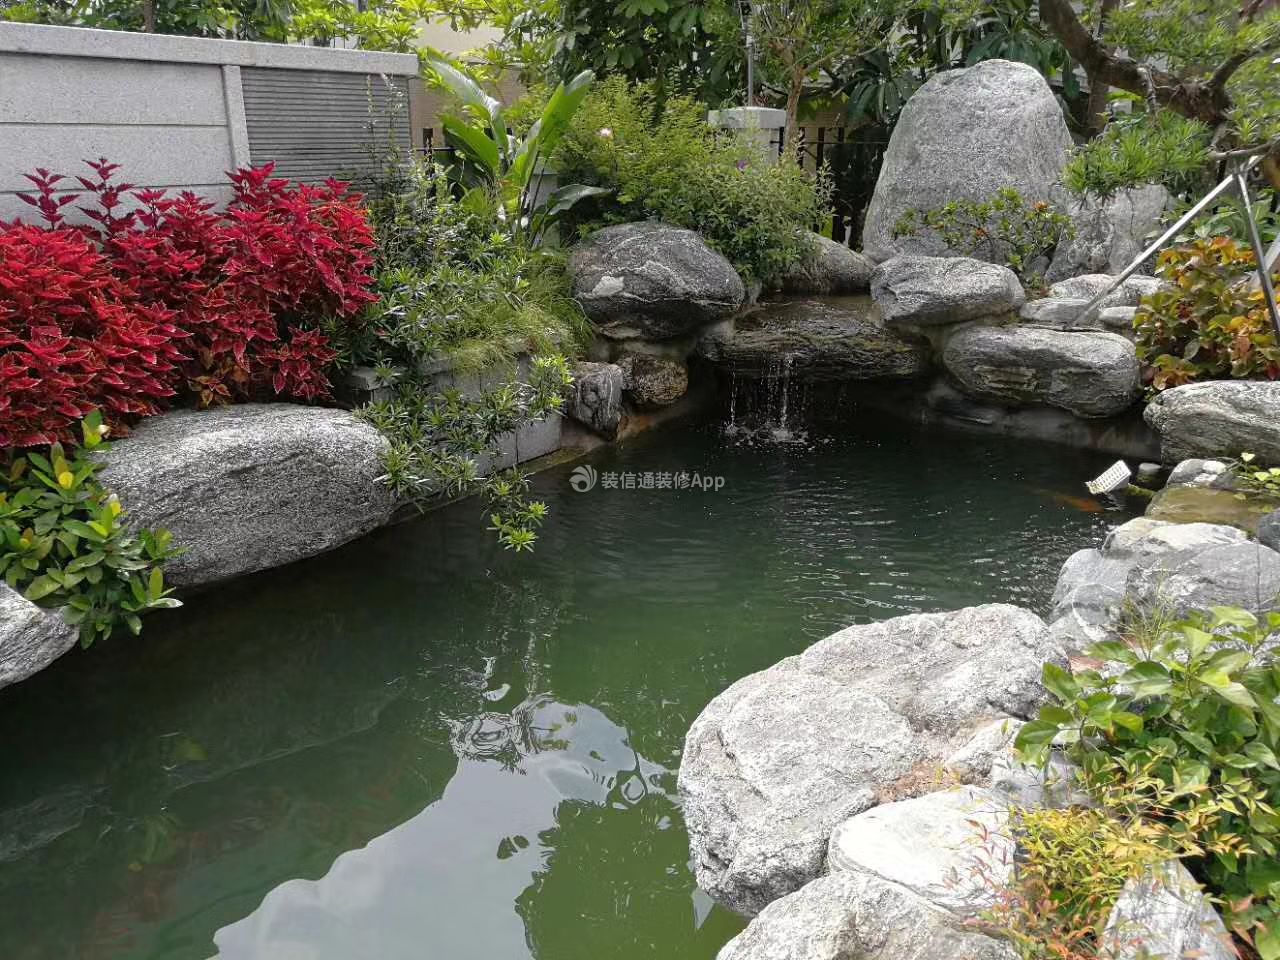 真黑石头假山鱼池过滤流水喷泉庭院水池别墅园艺设计施工阳台水景